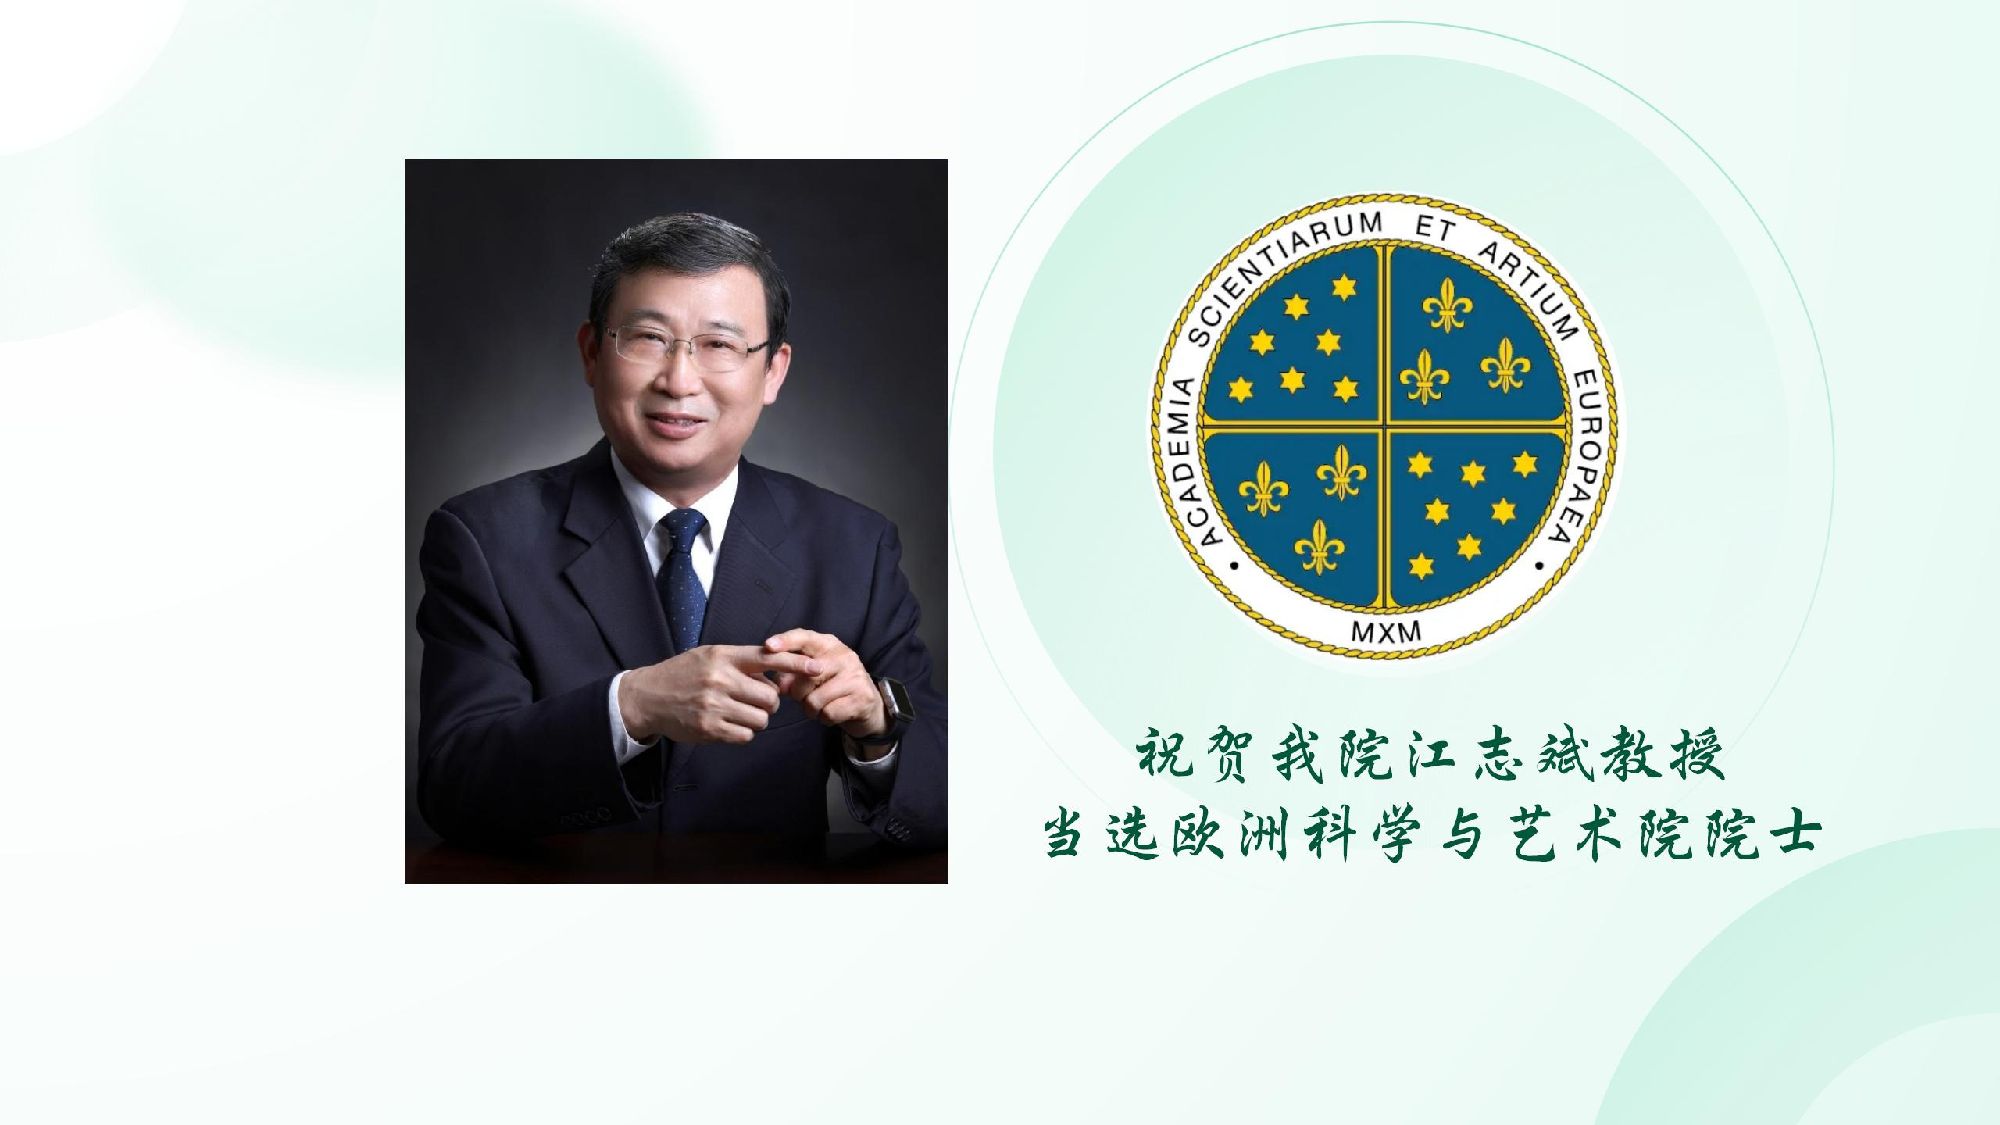 祝贺我院江志斌教授当选欧洲科学与艺术院院士